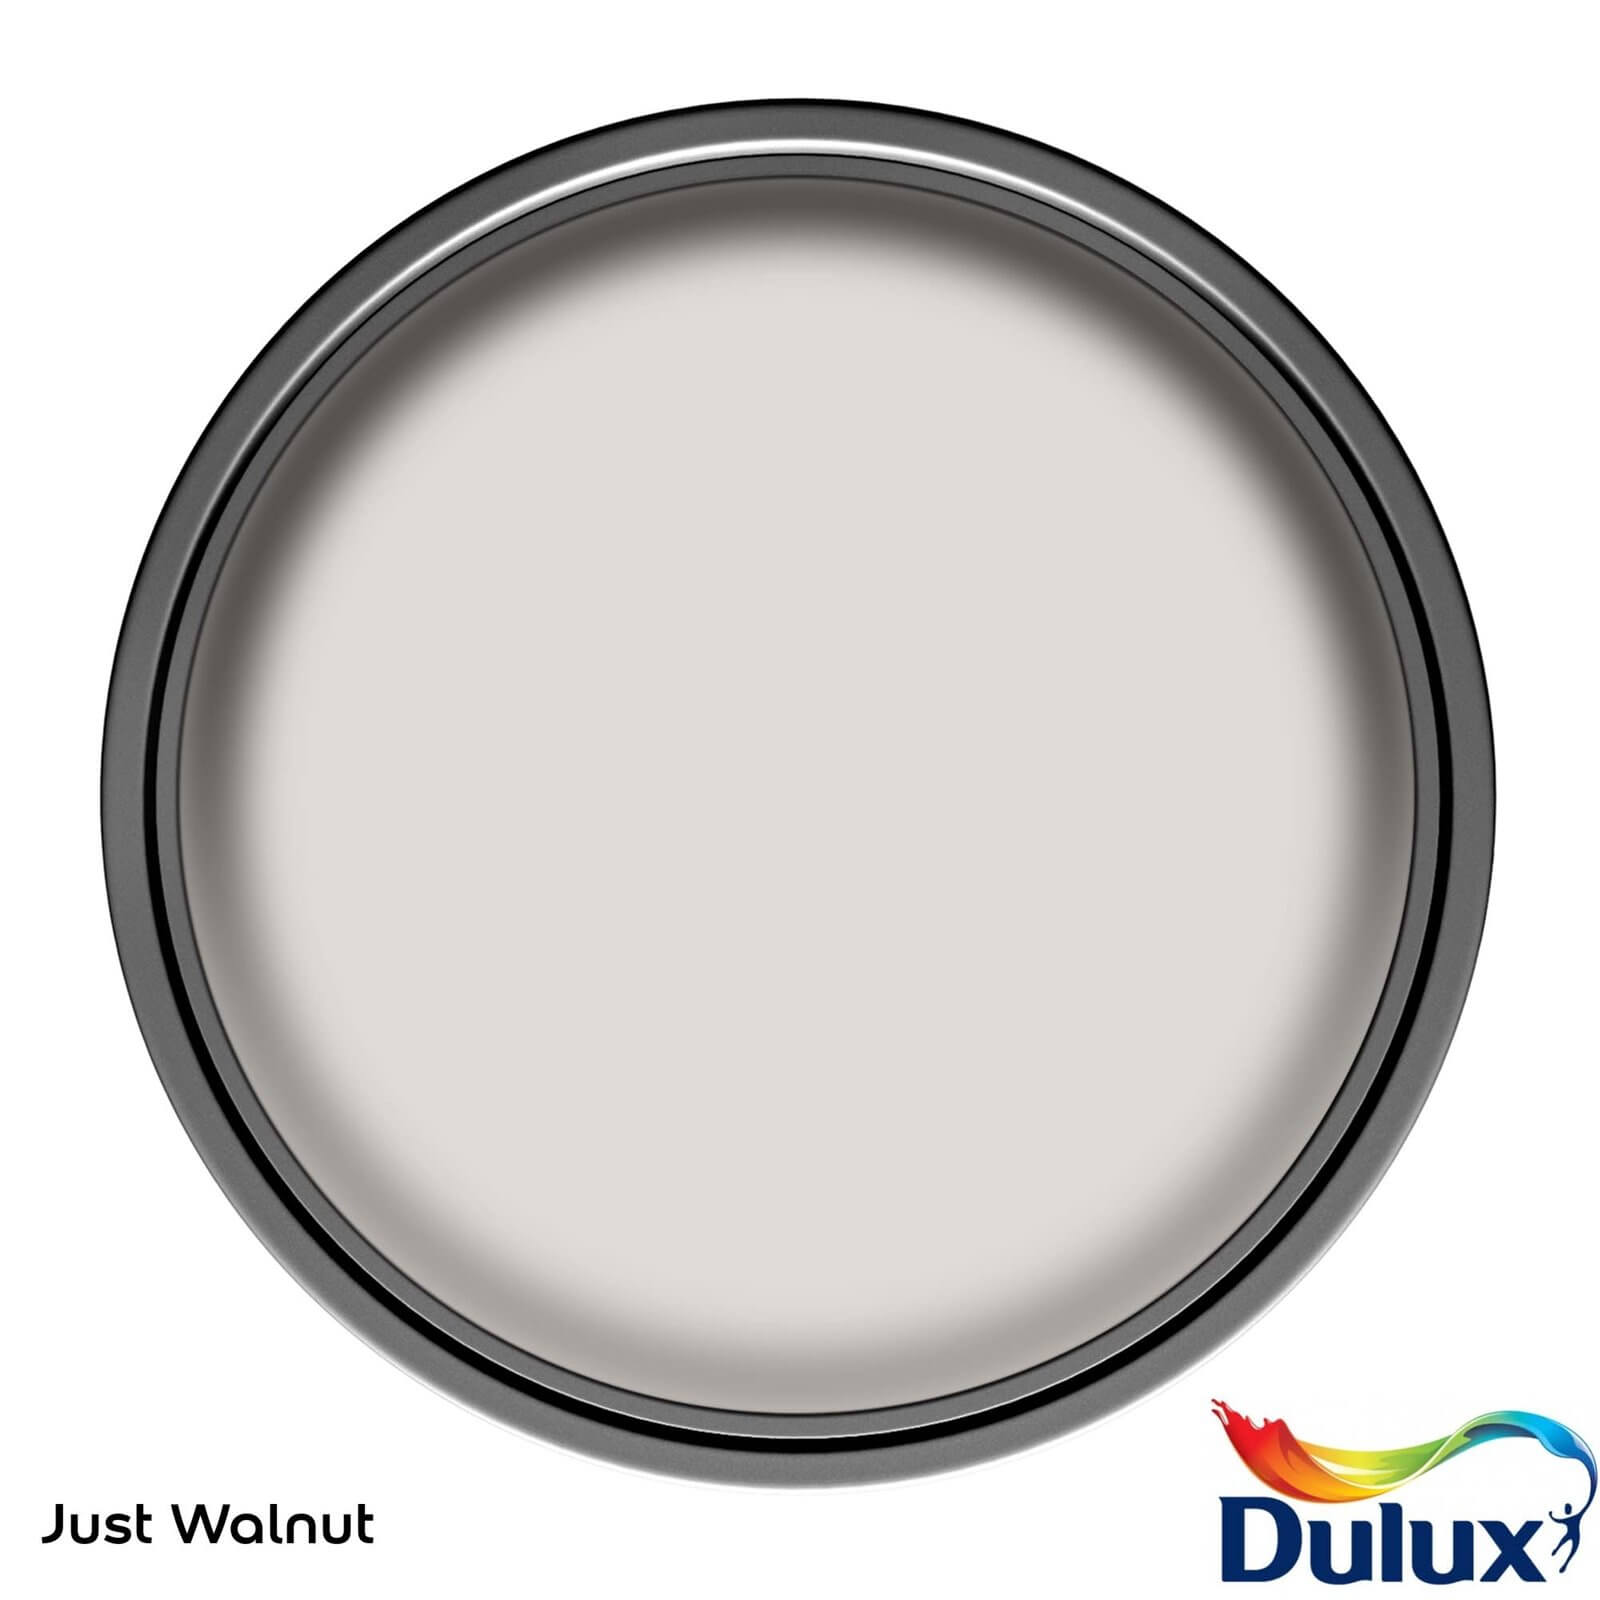 Dulux Easycare Washable & Tough Just Walnut Matt Paint - 5L